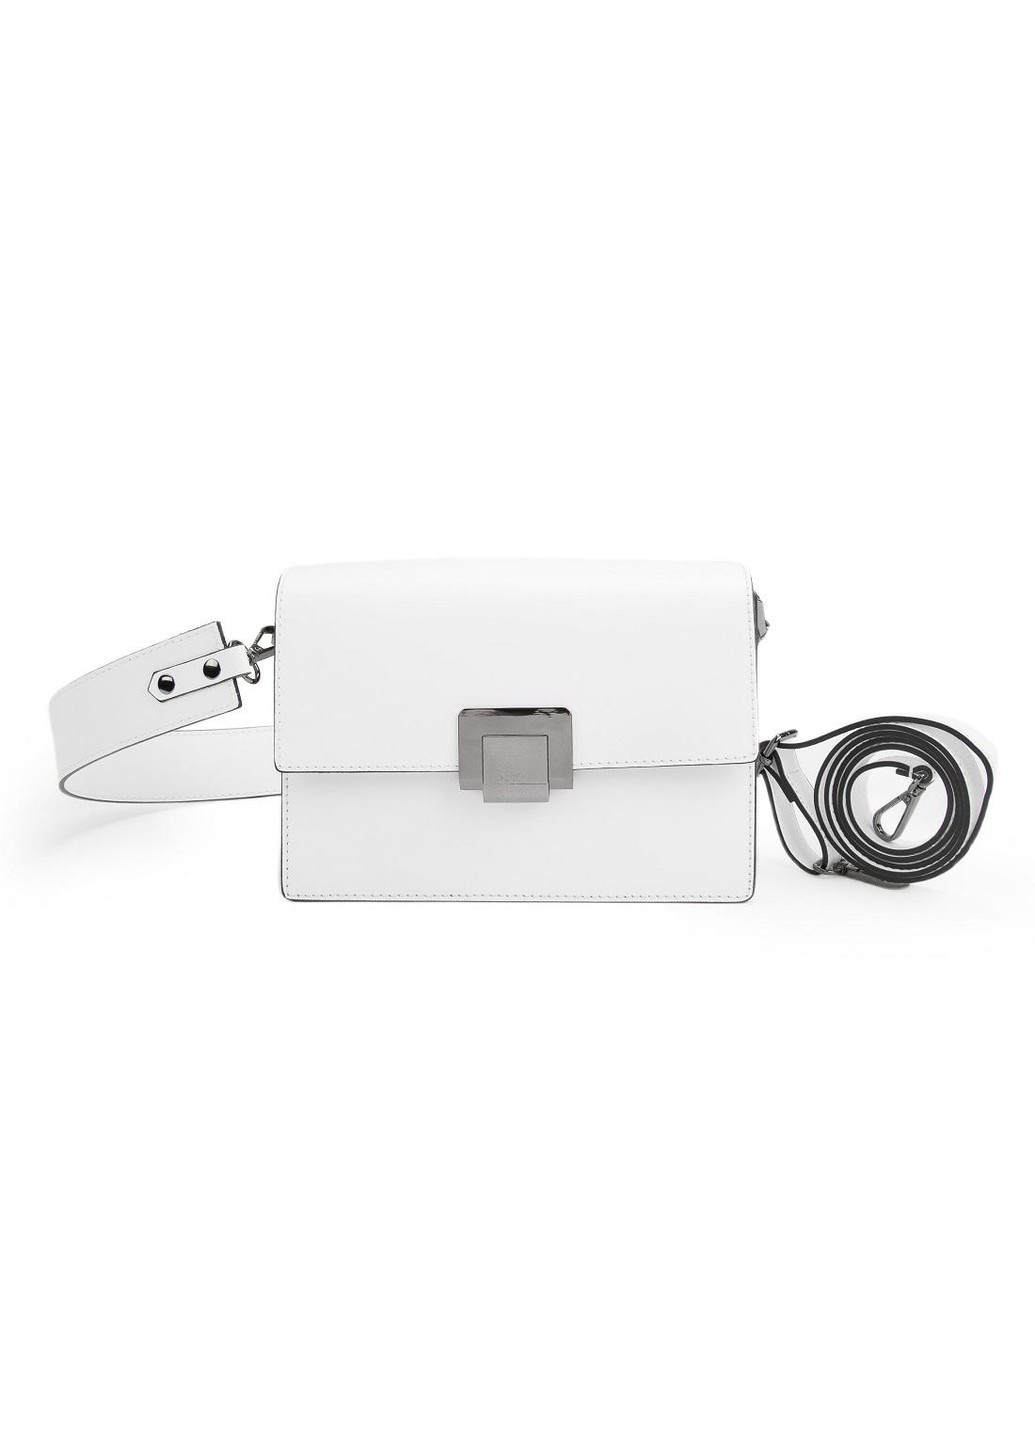 Женская классическая небольшая сумочка Italy F-IT-007W Firenze (277977458)